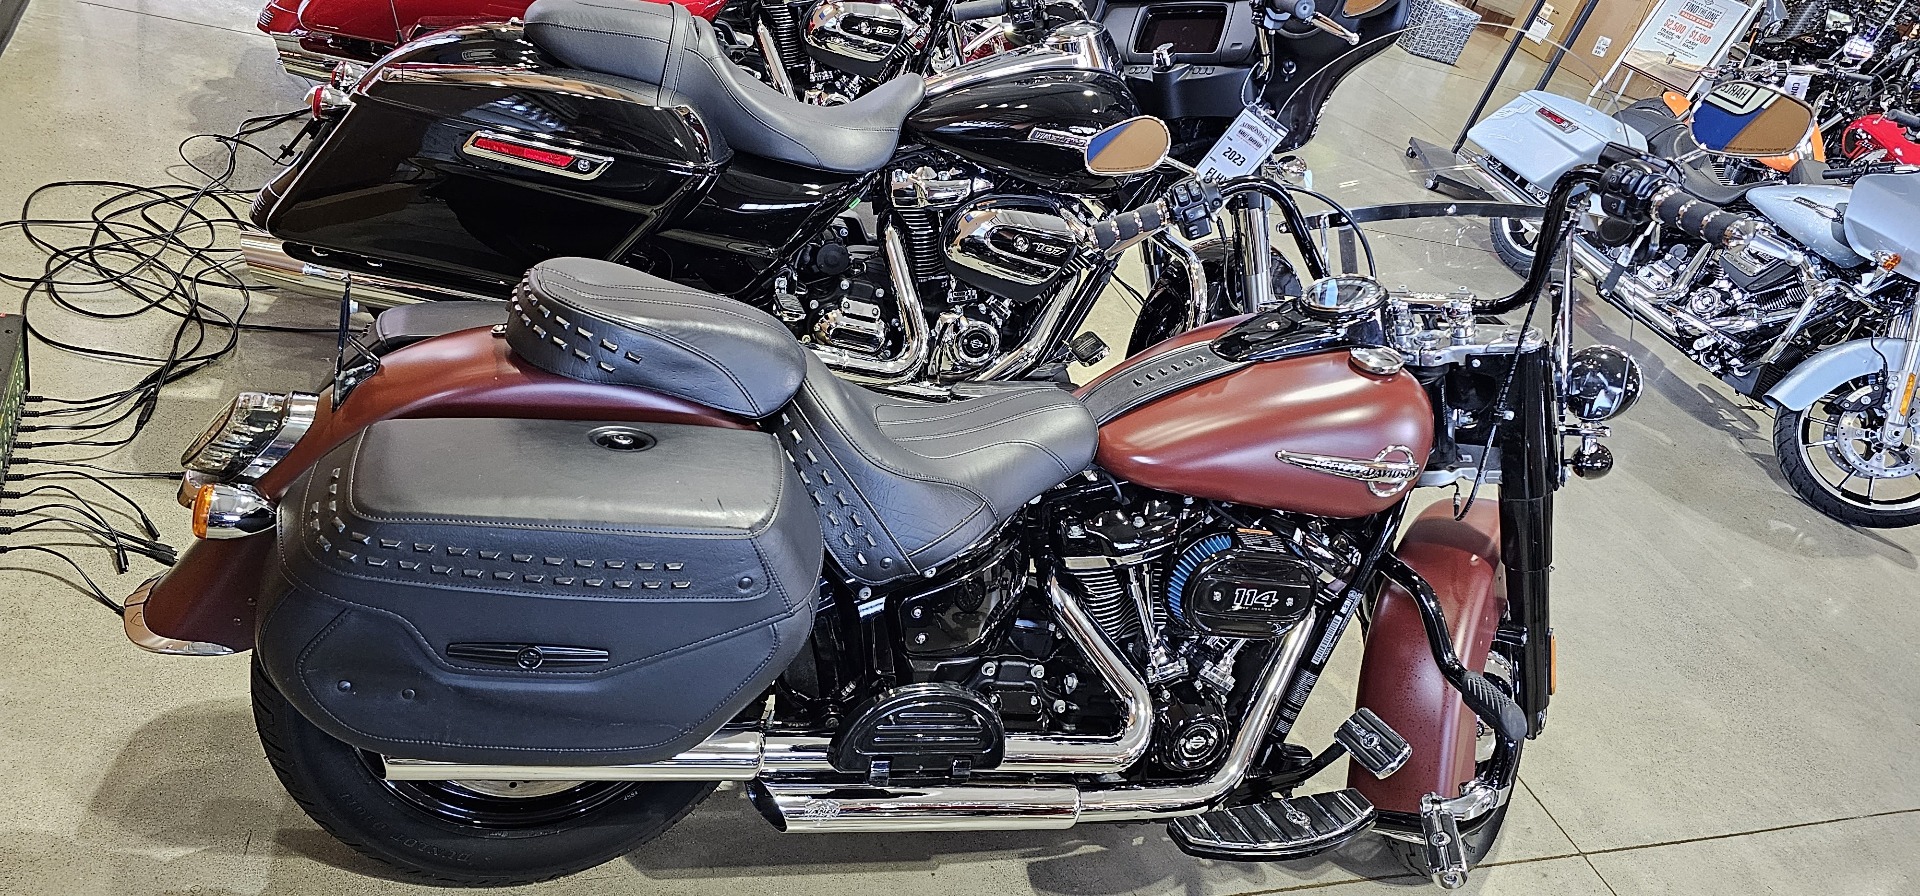 2018 Harley-Davidson Heritage Classic 114 in Broadalbin, New York - Photo 3